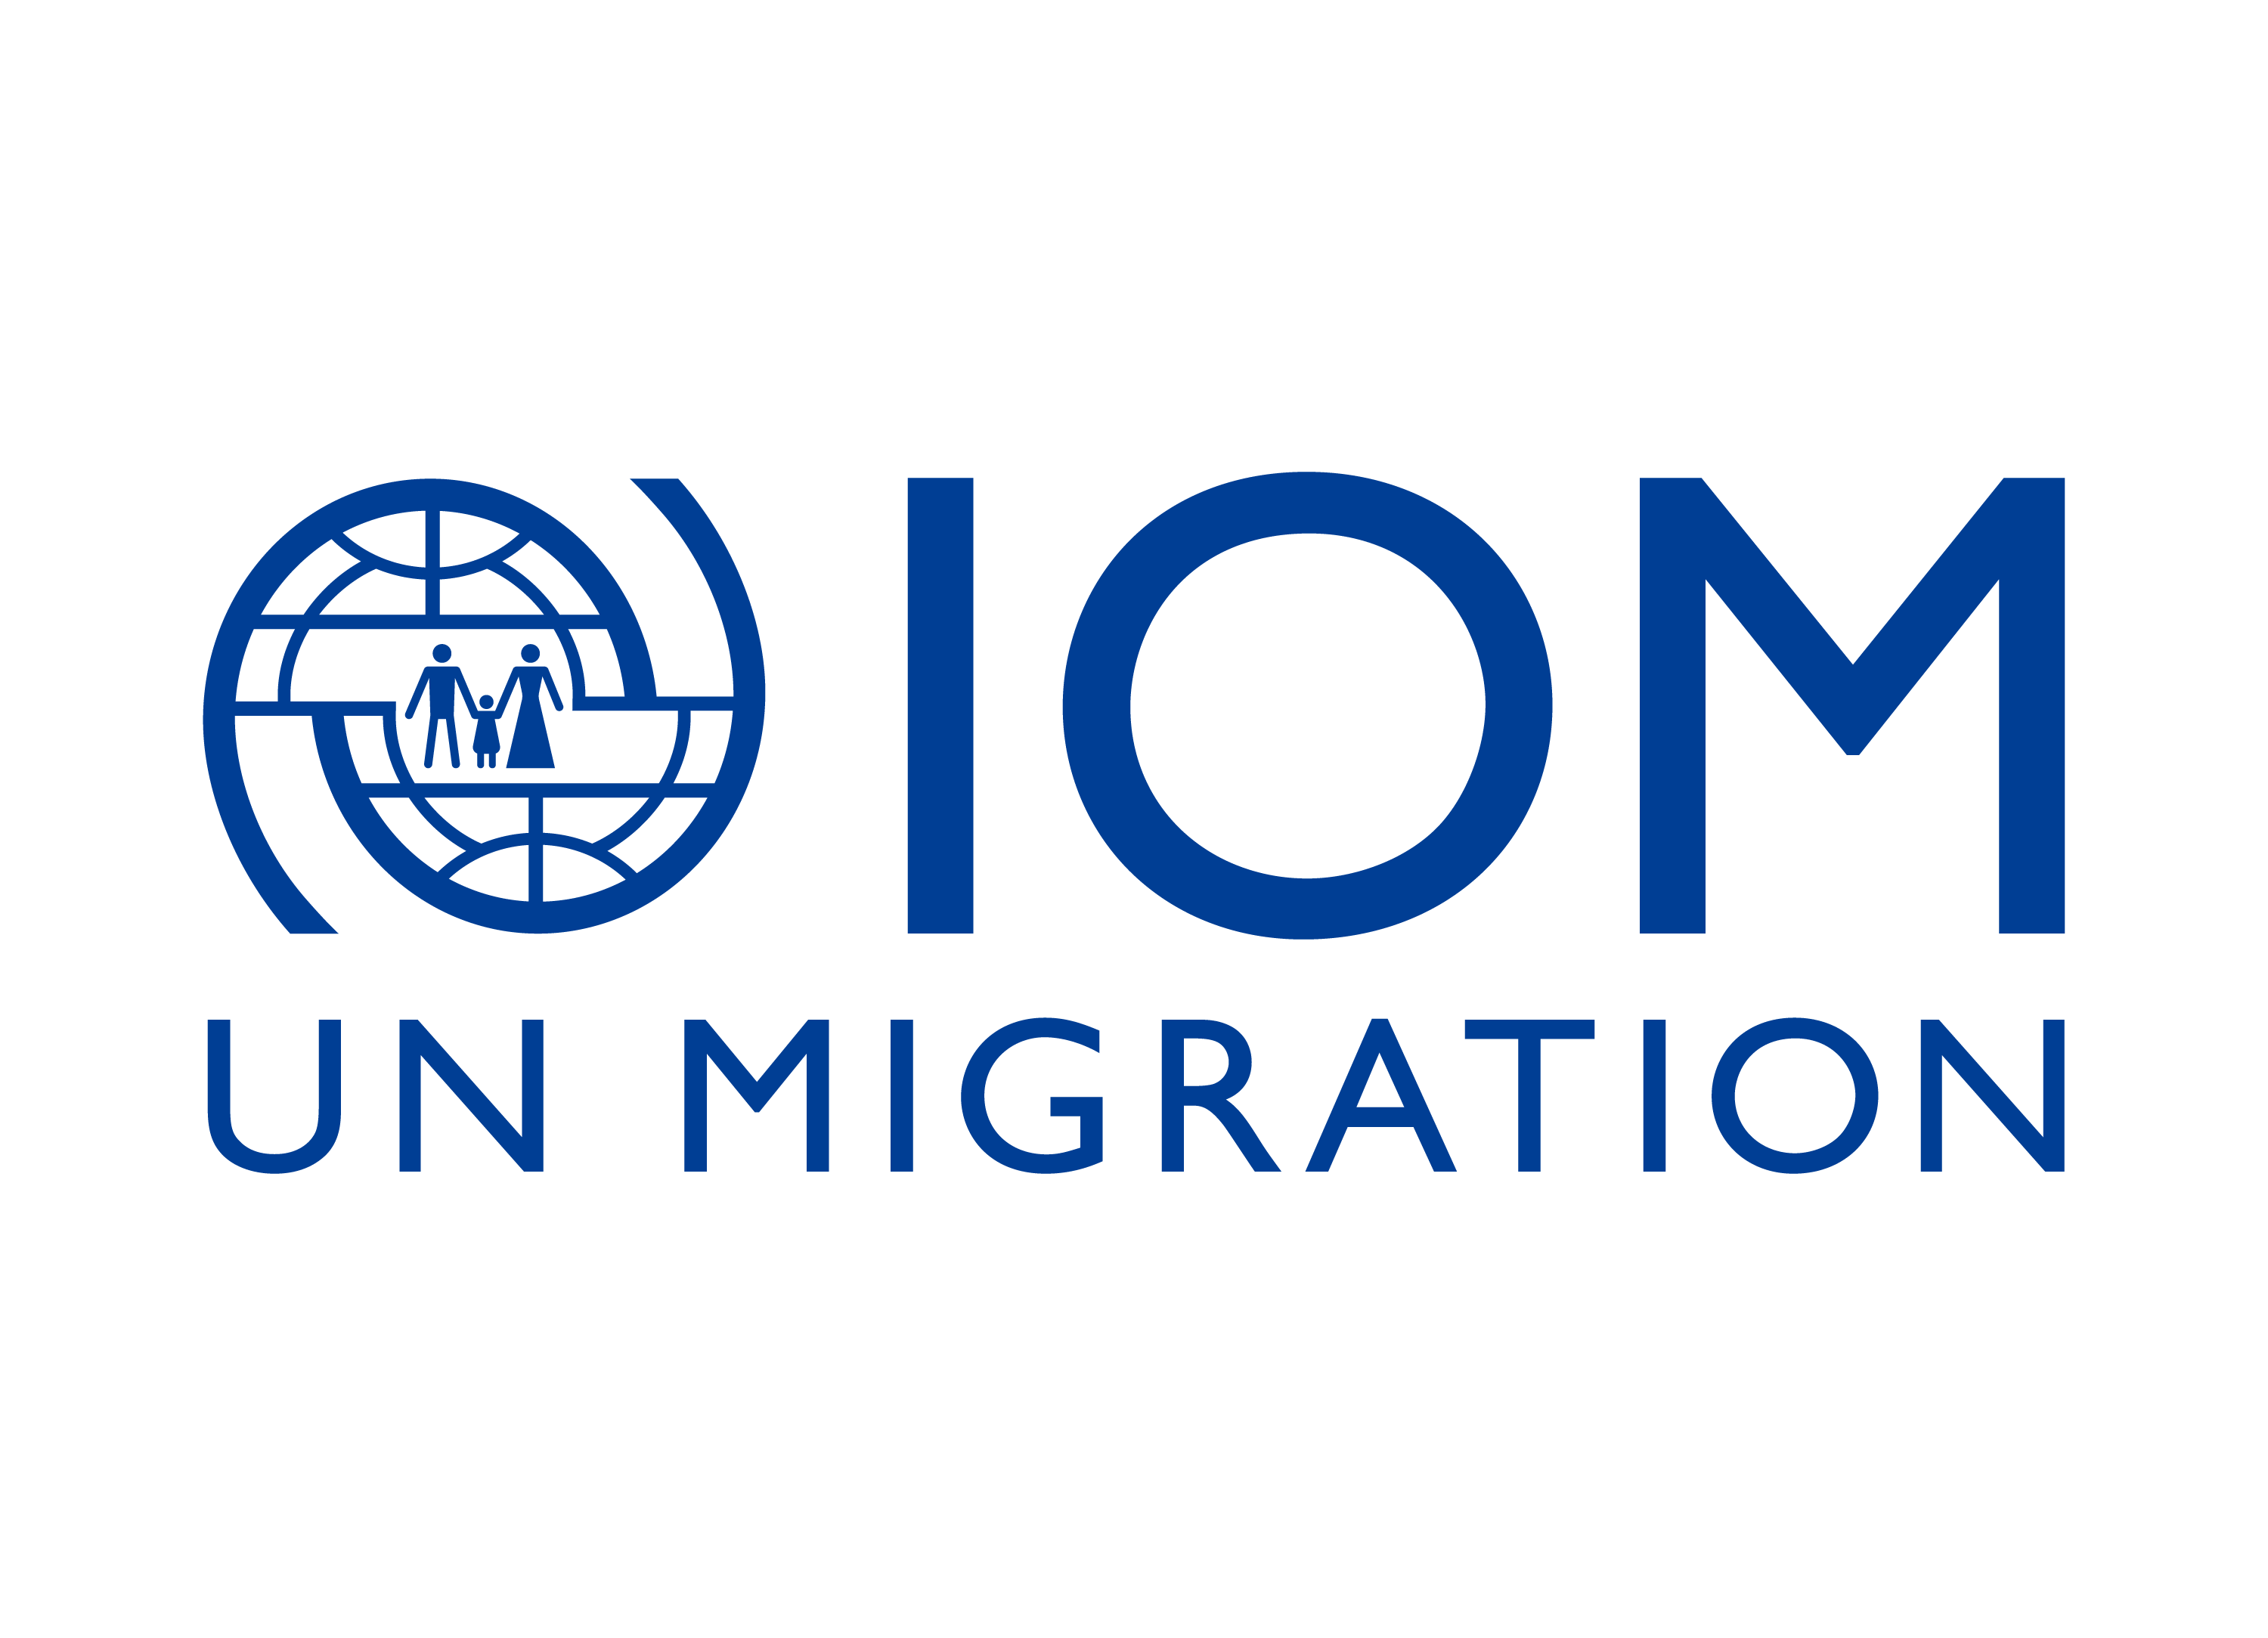 IOM UN Migration